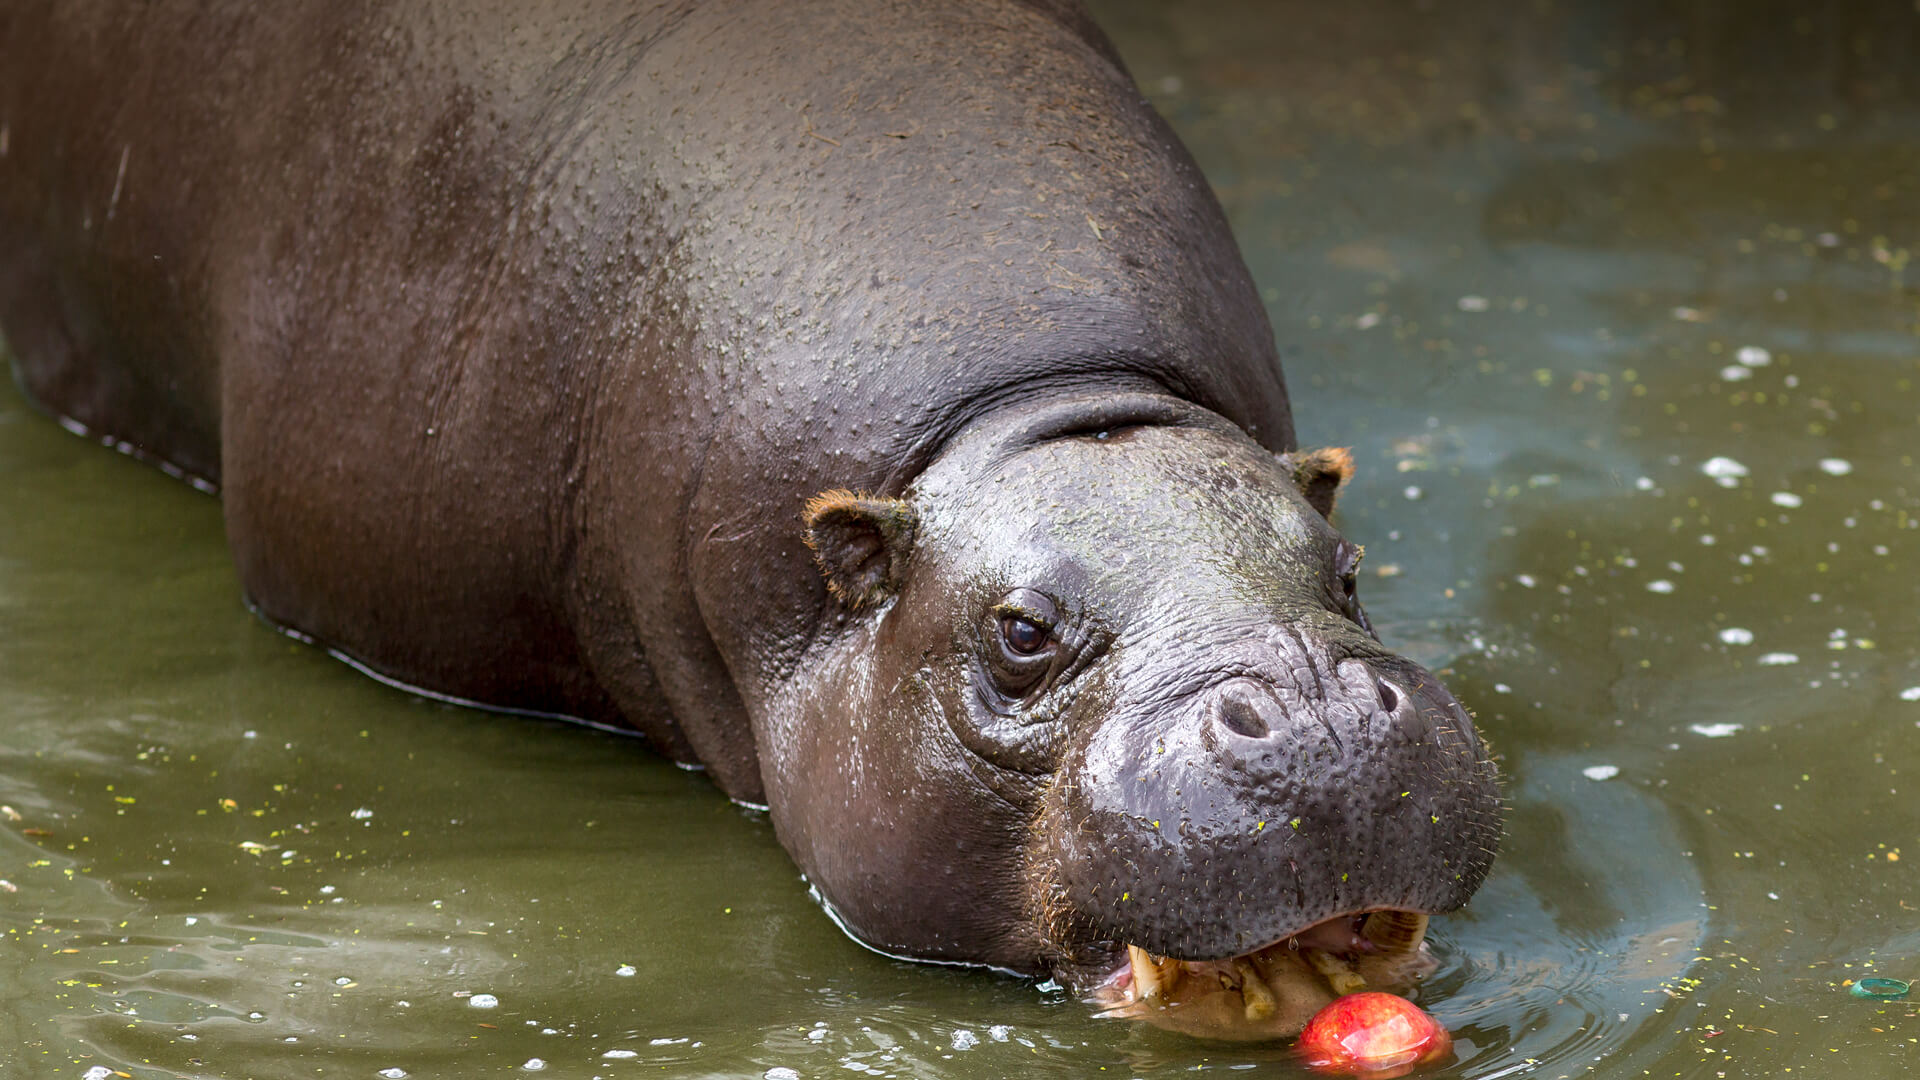 Pygmy hippo enjoys an apple